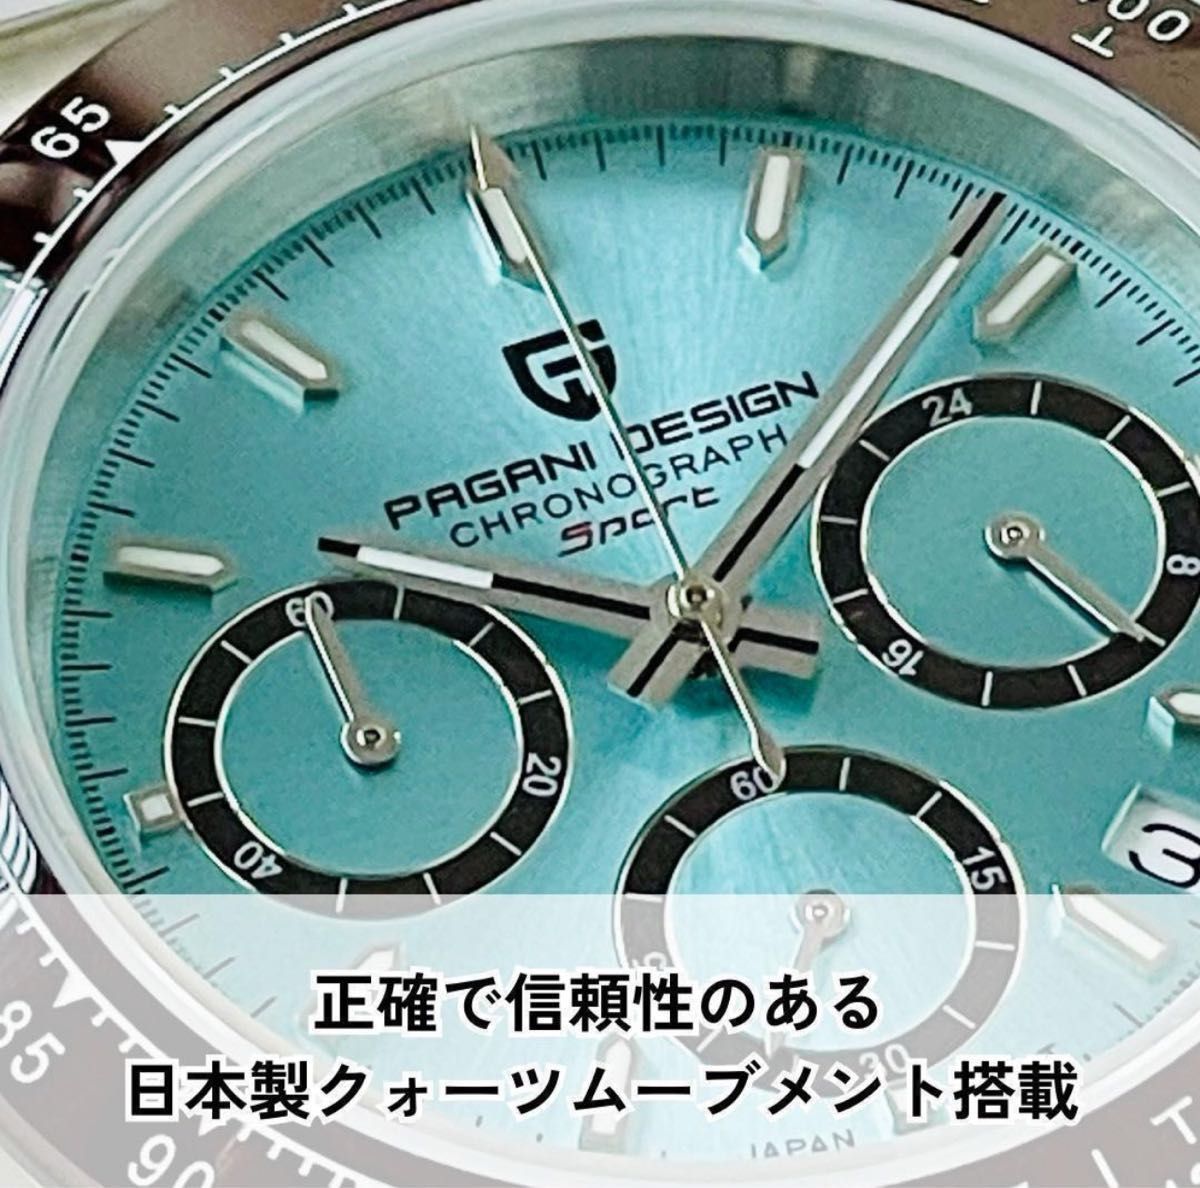 腕時計新品アナログ日本製クォーツPAGANI DESIGNパガーニデザインアナログVK63クロノグラフ高級アイスブルーレアカーラー